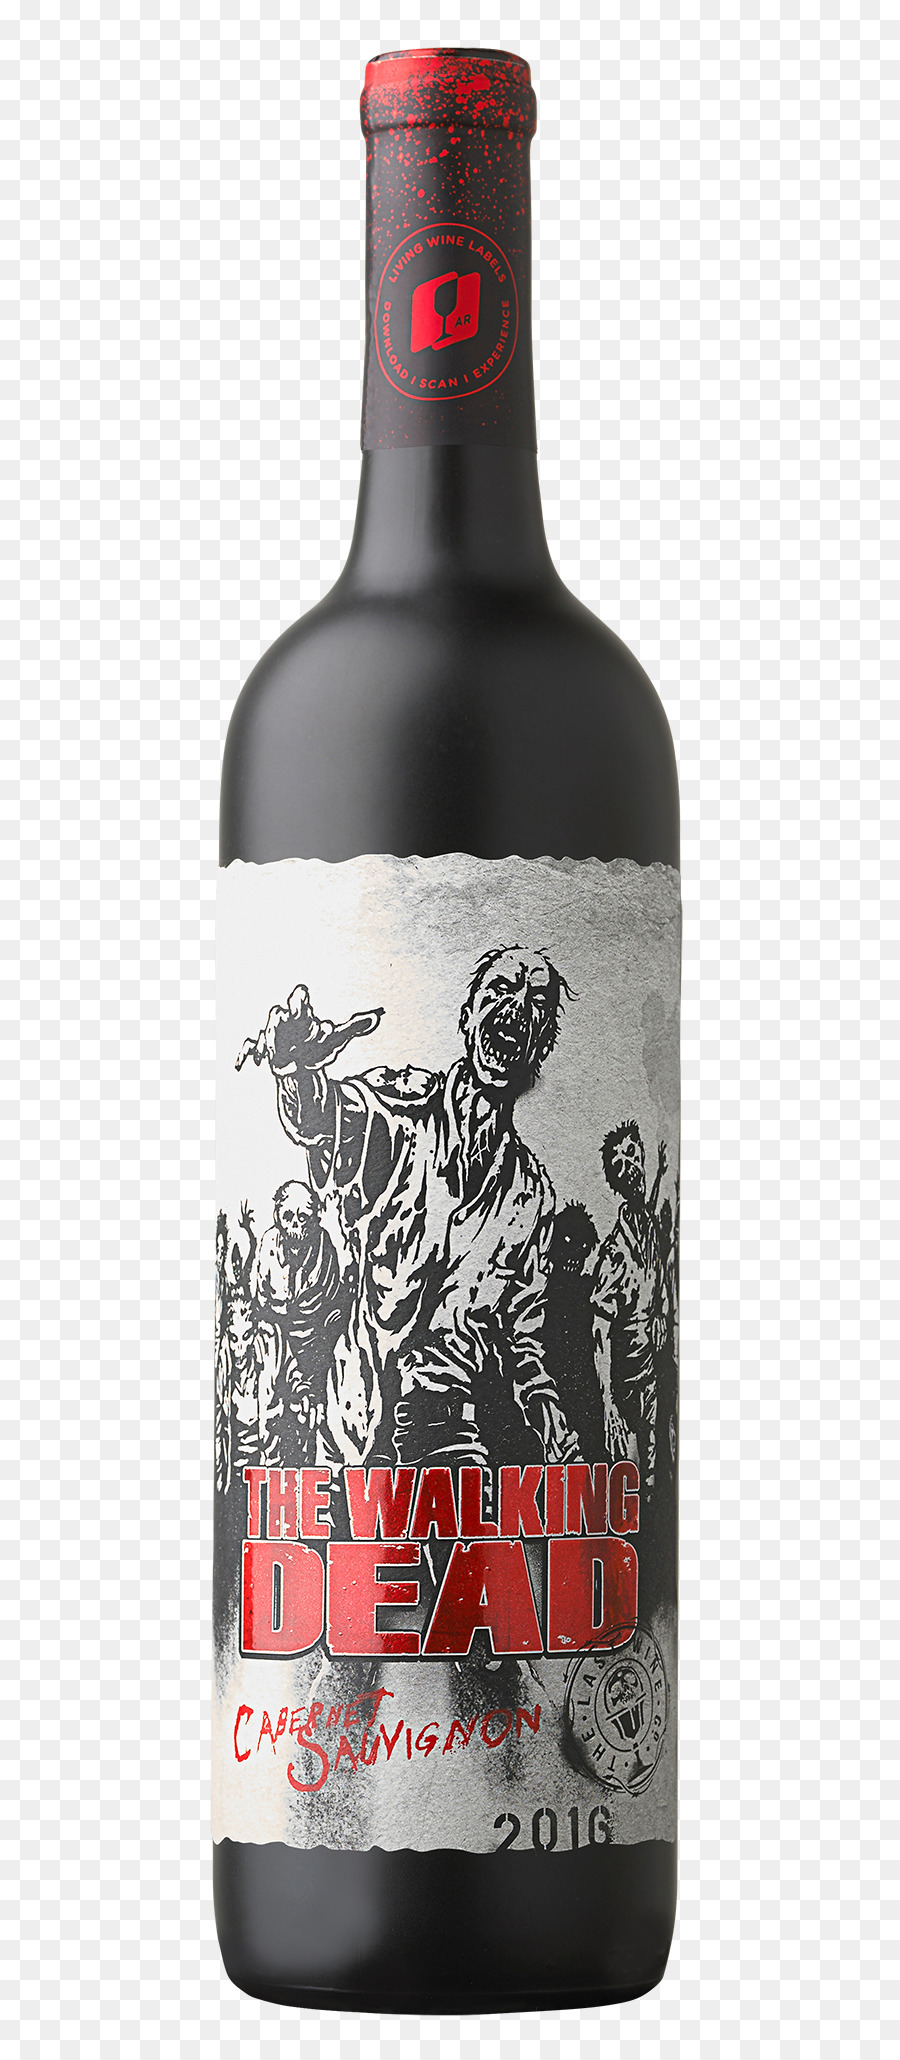 Vino rosso Cabernet Sauvignon Distillato bevanda Napa Valley AVA - vino